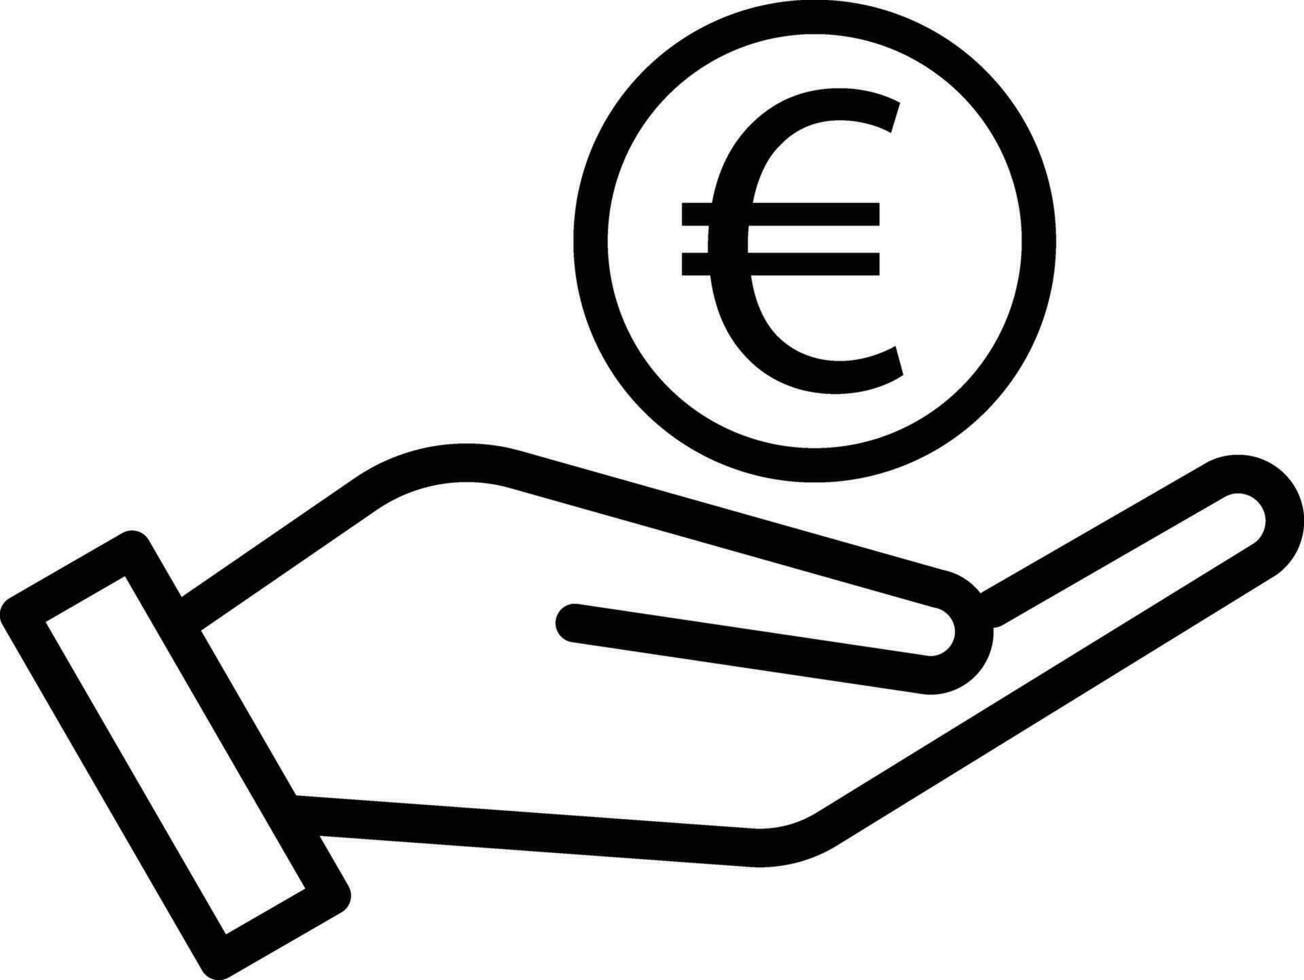 Euro Zeichen im Hand . Hand halten Euro Symbol . Vektor Illustration